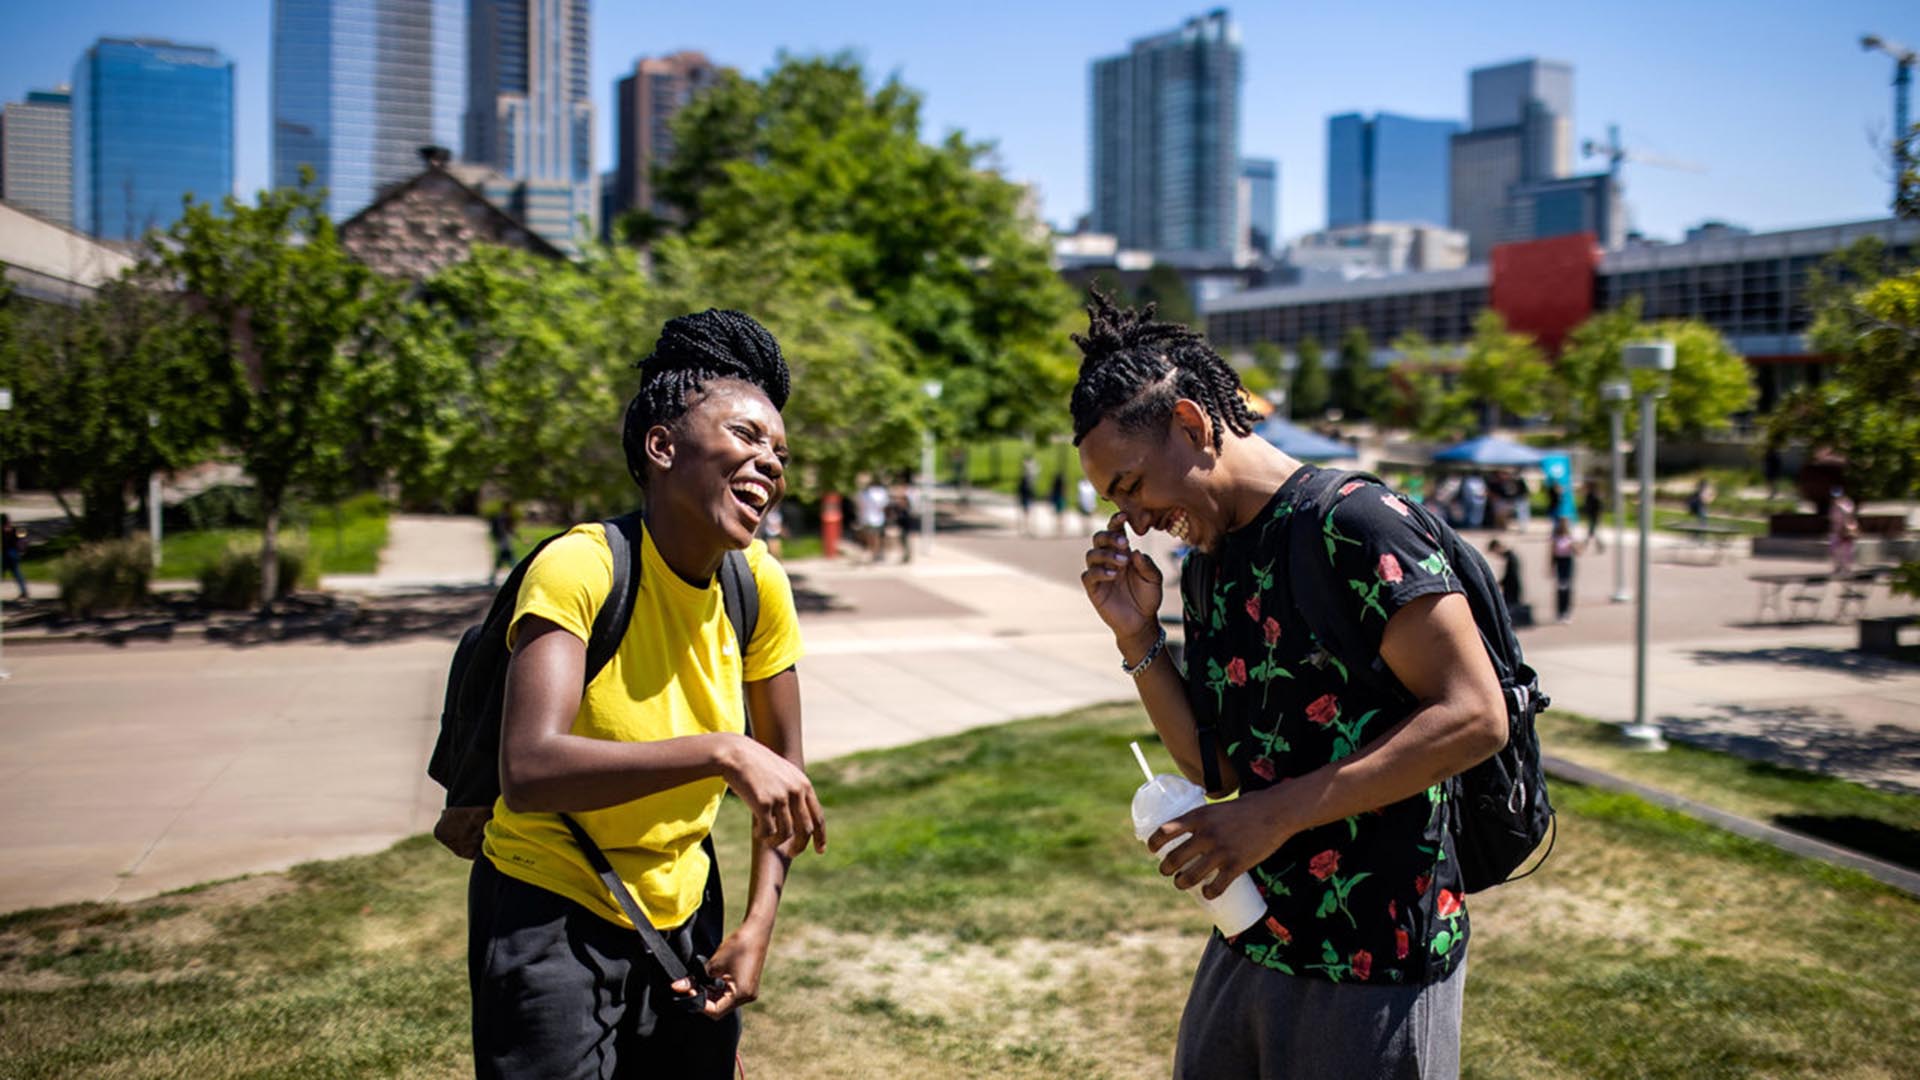 MSU Denver students Mussu Dolly, left, and Elijah Sanditer, laugh together on campus